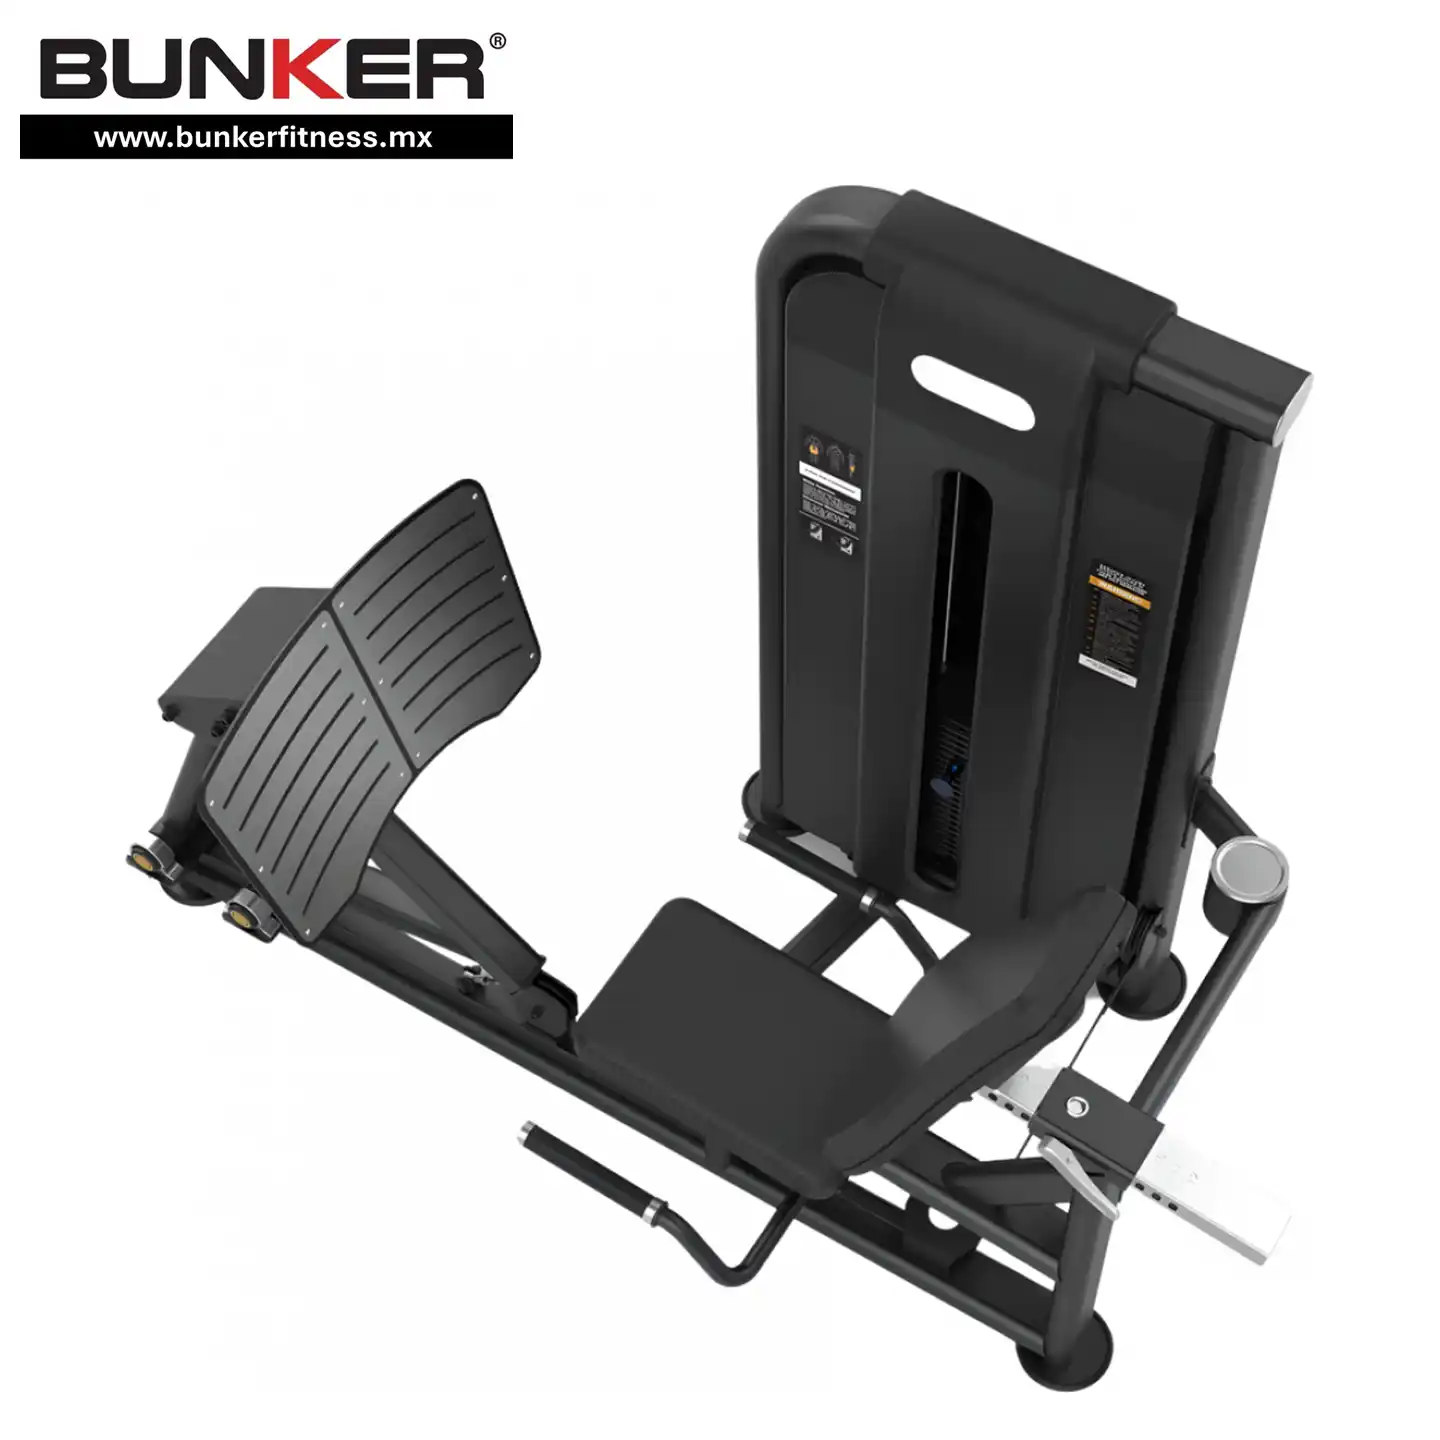 aparato prensa de pierna y pantorrilla con peso integrado bunker gym bunker fitness